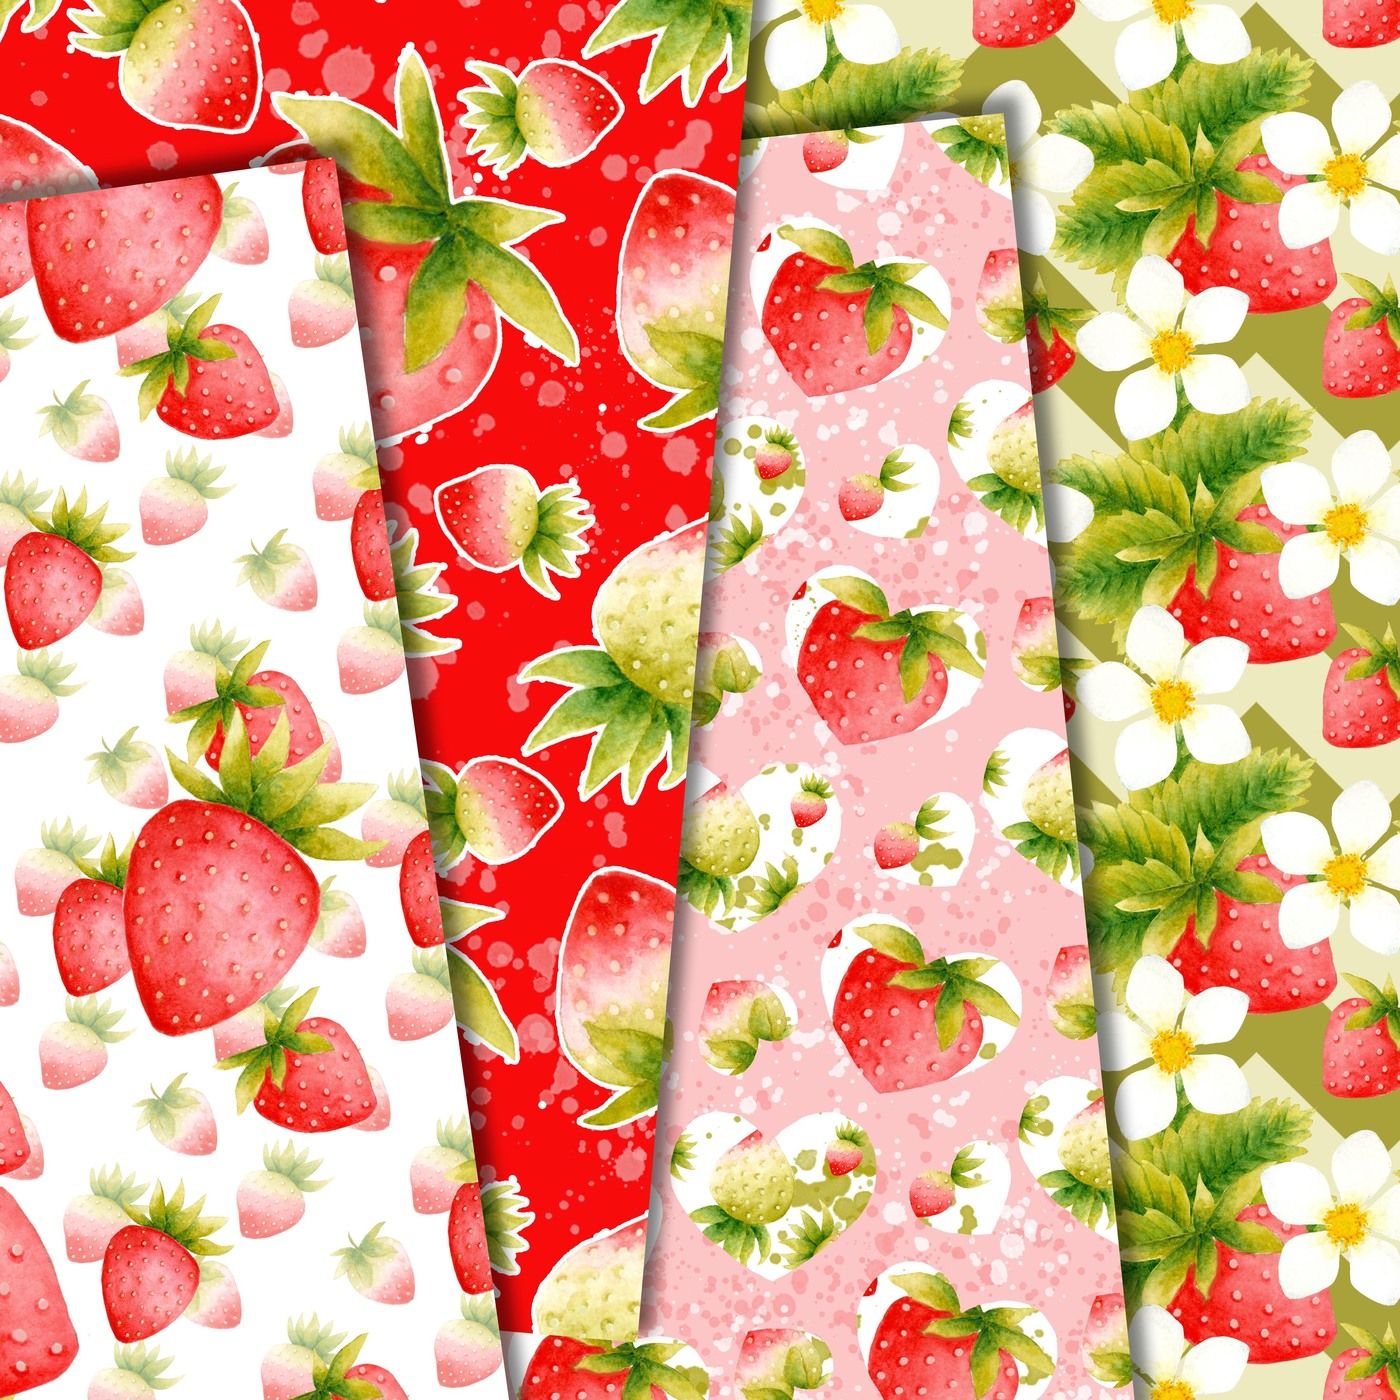 Strawberry digital paper pack By DigitalDesignsAndArt